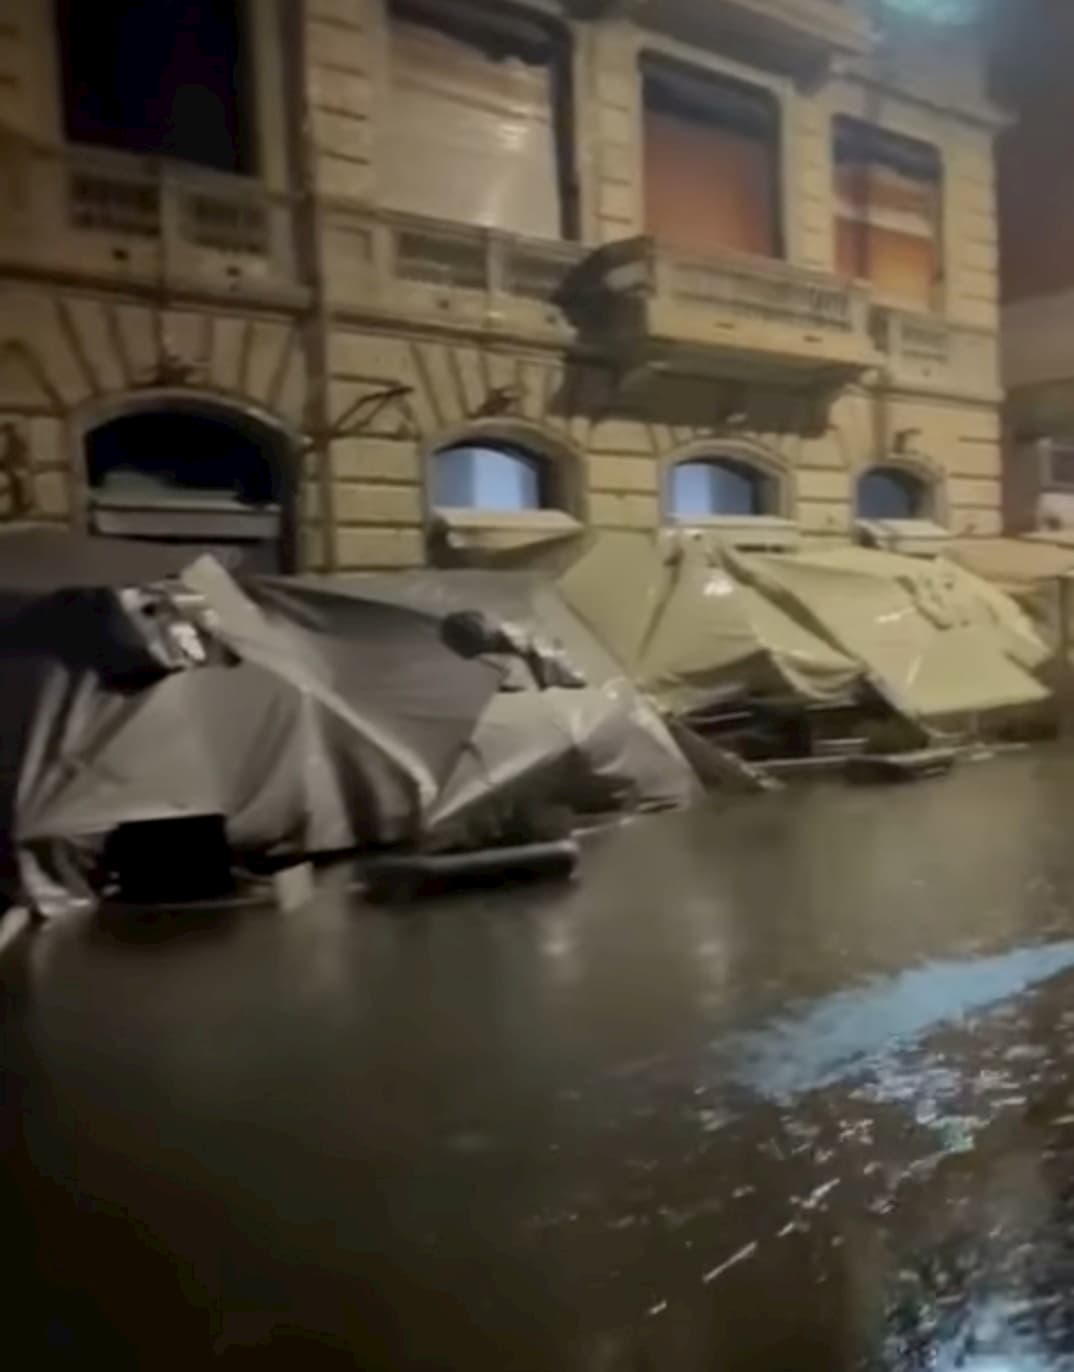 (Video) Lungomare distrutto, de Magistris: “Napoli tornerà a splendere”